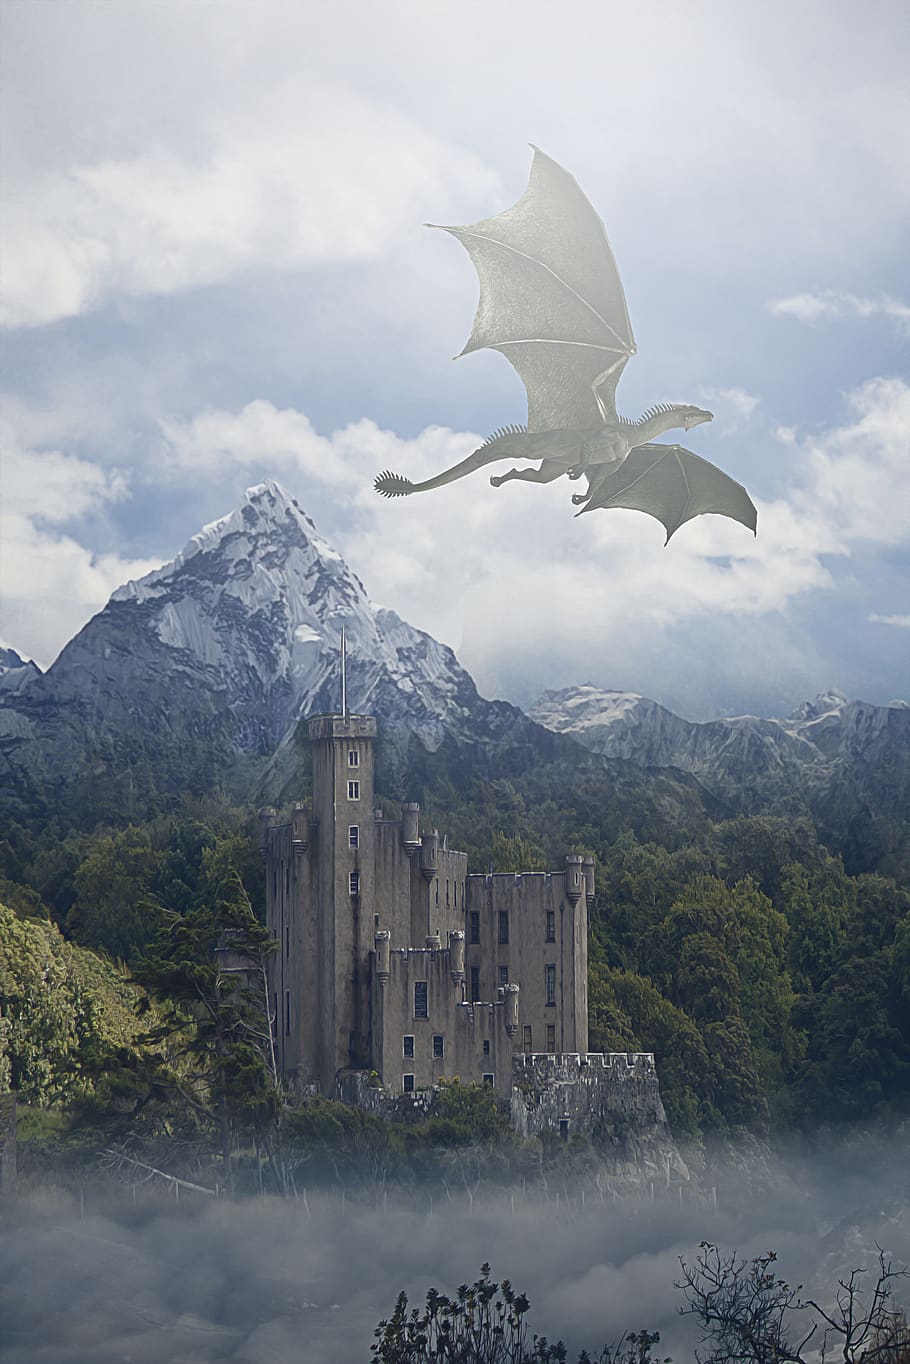 dragón, volador, cielo, nubes, montañas, árboles, castillo, fantasía, paisaje, paisaje de fantasía